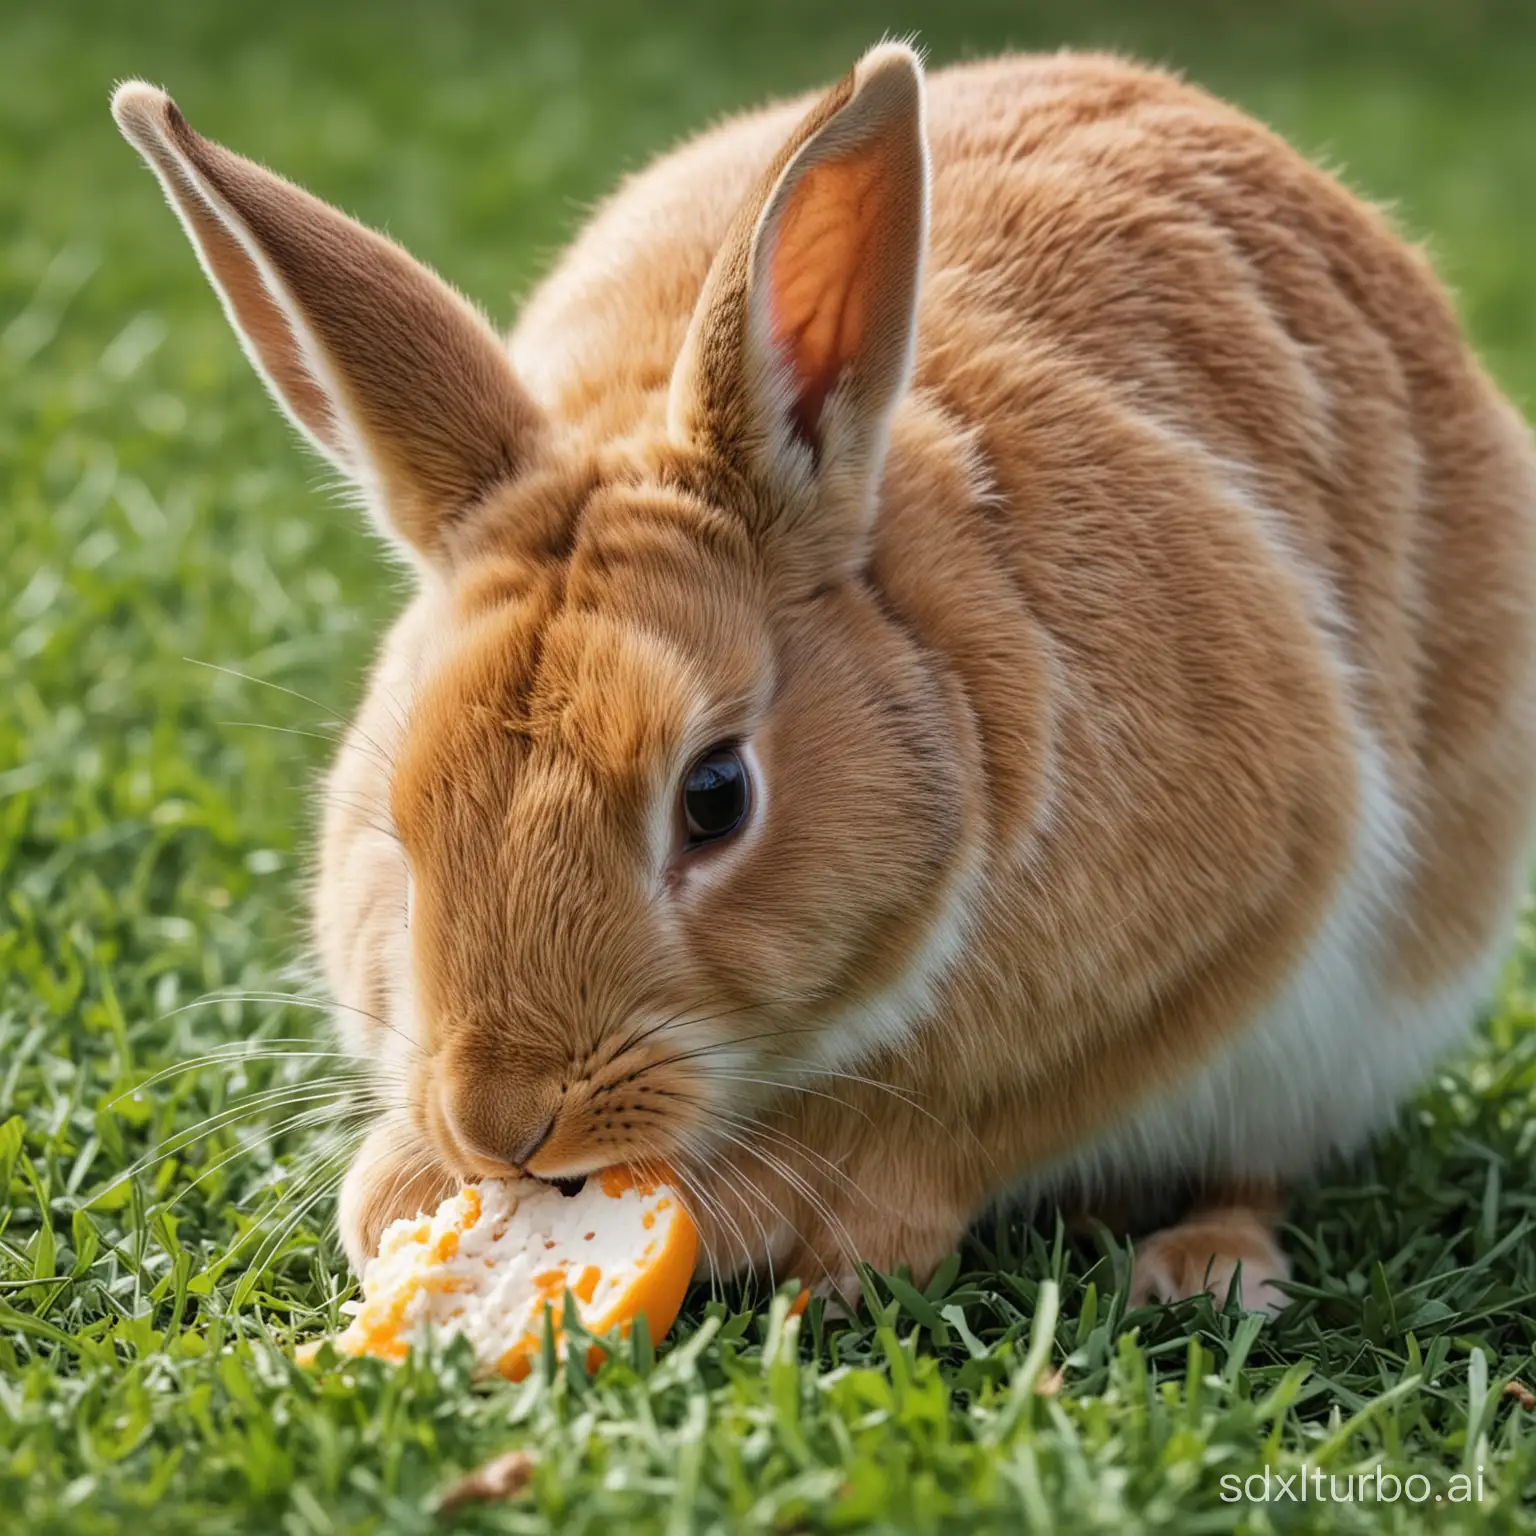 Um coelho comendo